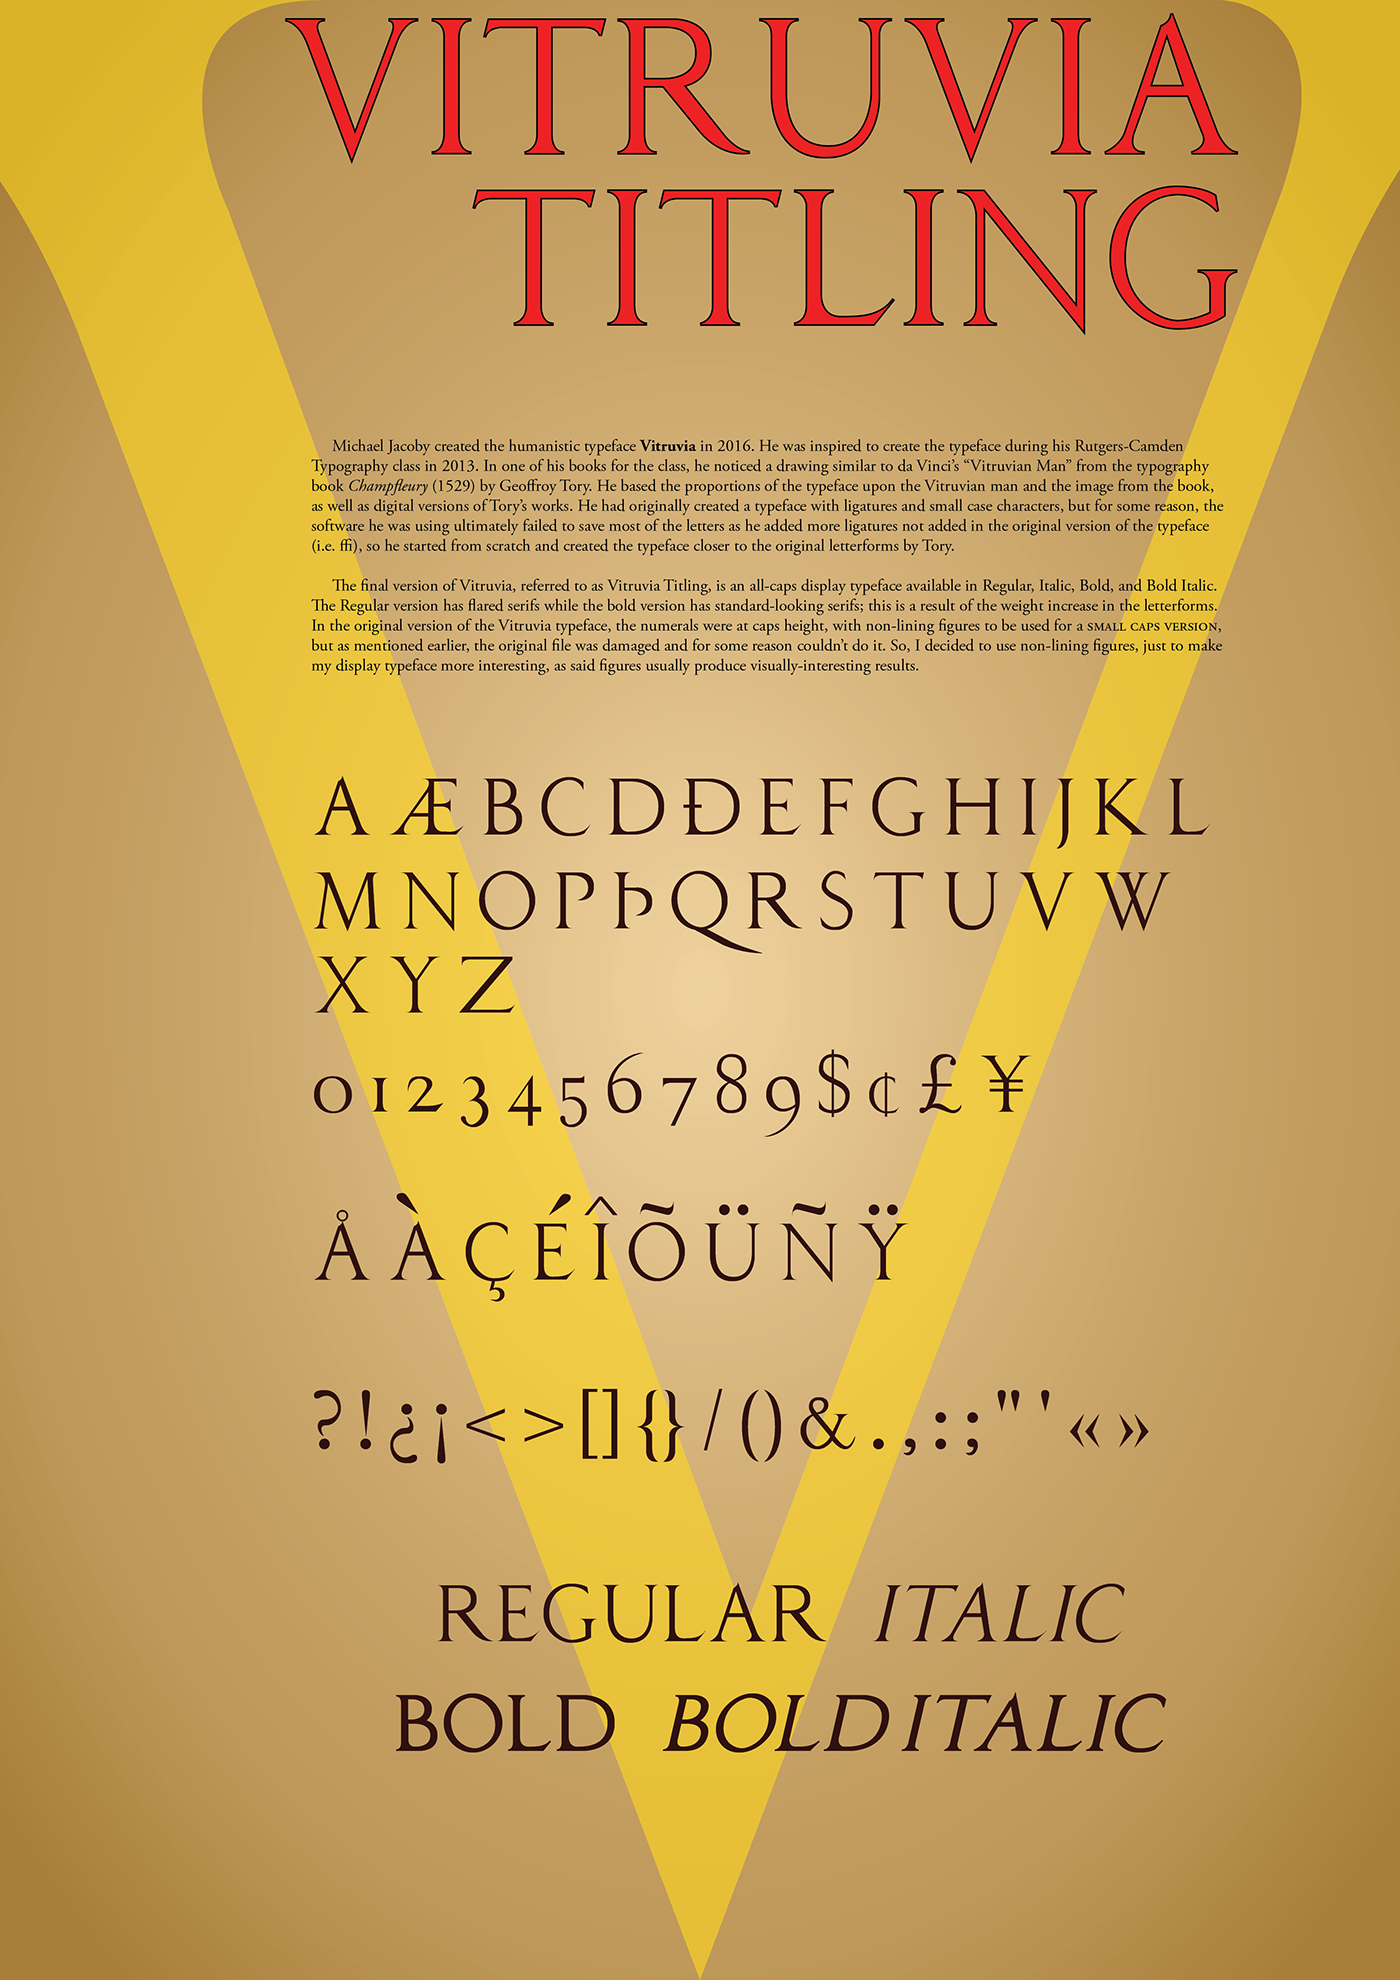 Champfleury Vitruvian man Da Vinci titling all-caps Typeface poster glyphic letterforms